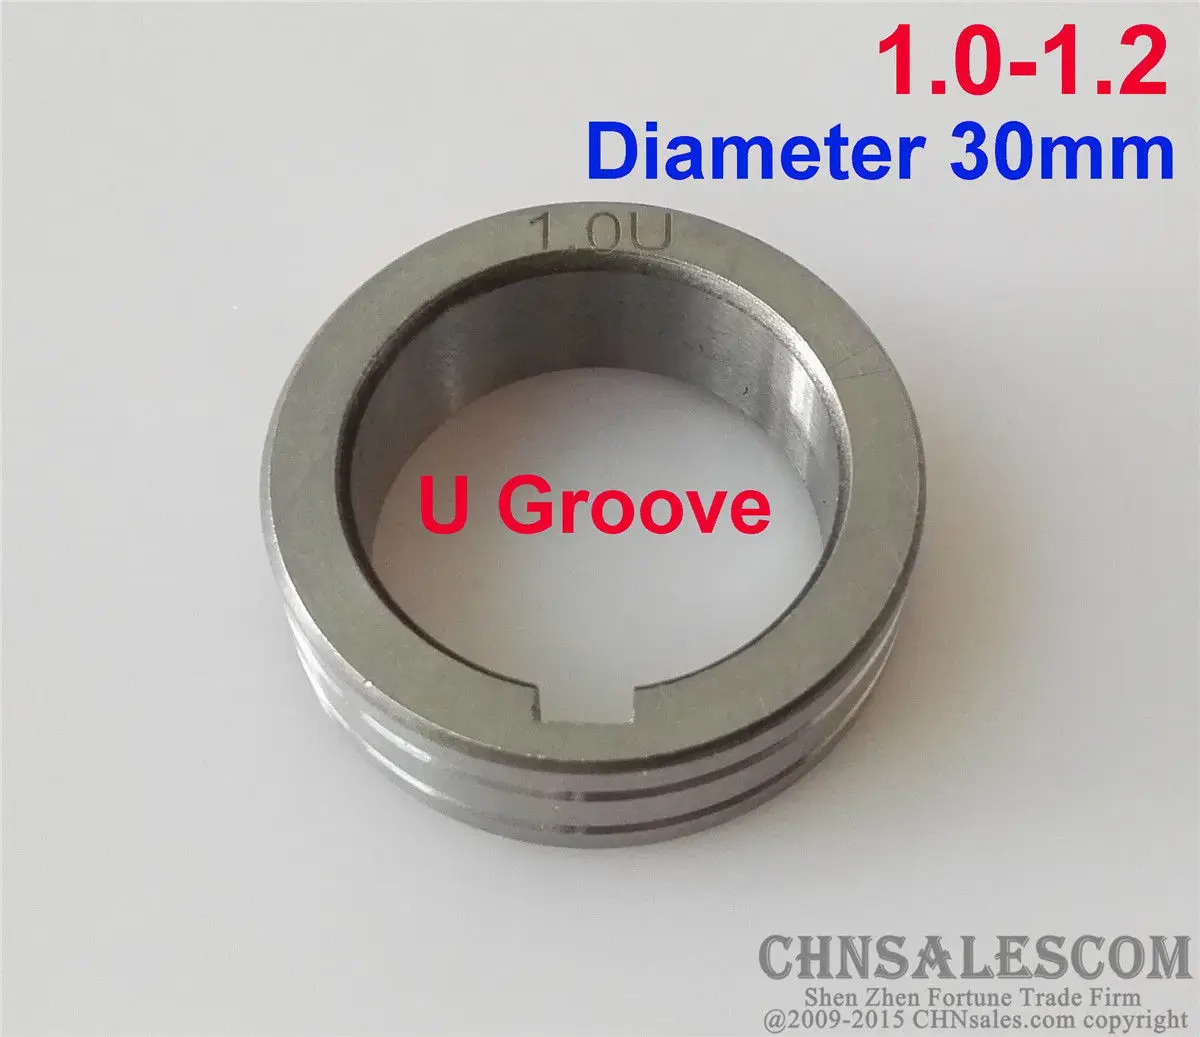 CHNsalescom ролик подачи проволоки U паз 1,0-1,2 диаметр 30 мм MIG mag сварочный аппарат